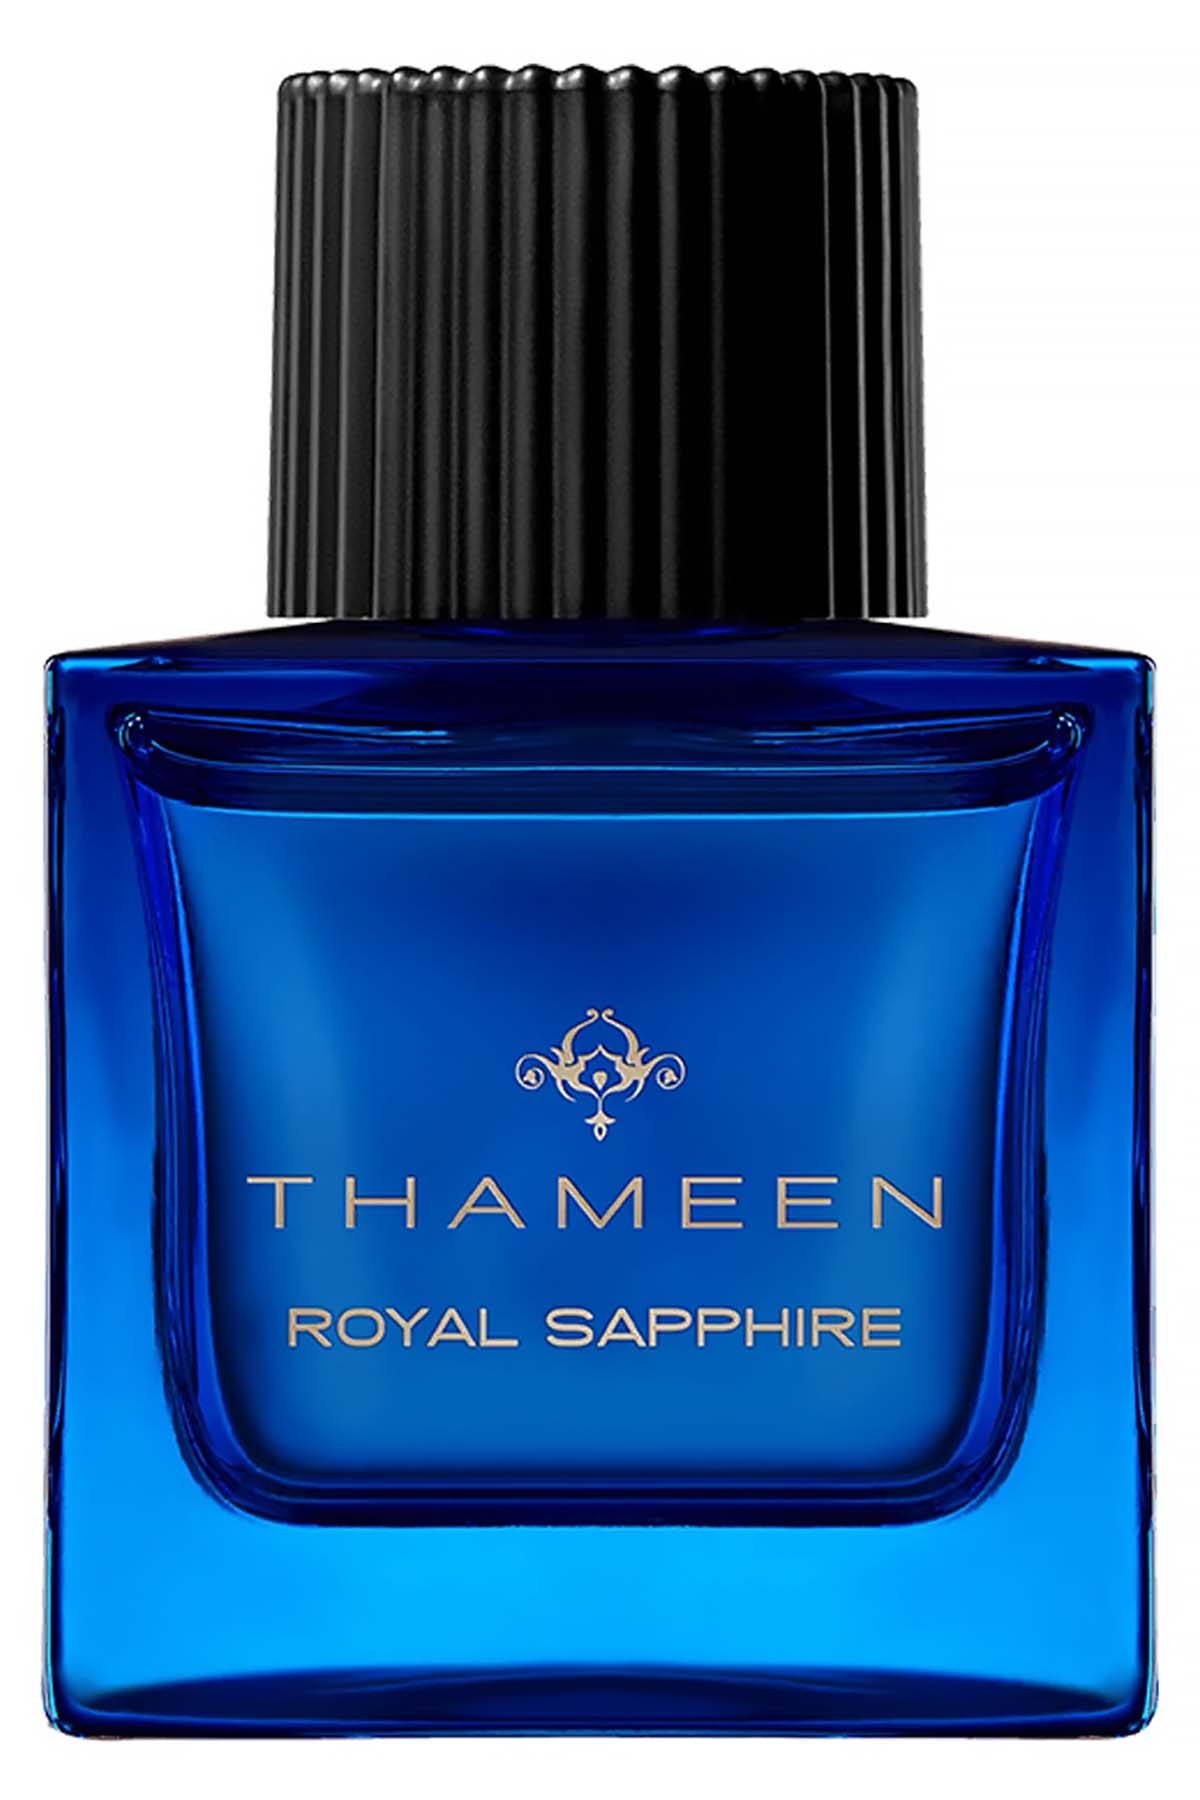 Thameen Royal Saphire Extrait de Parfum